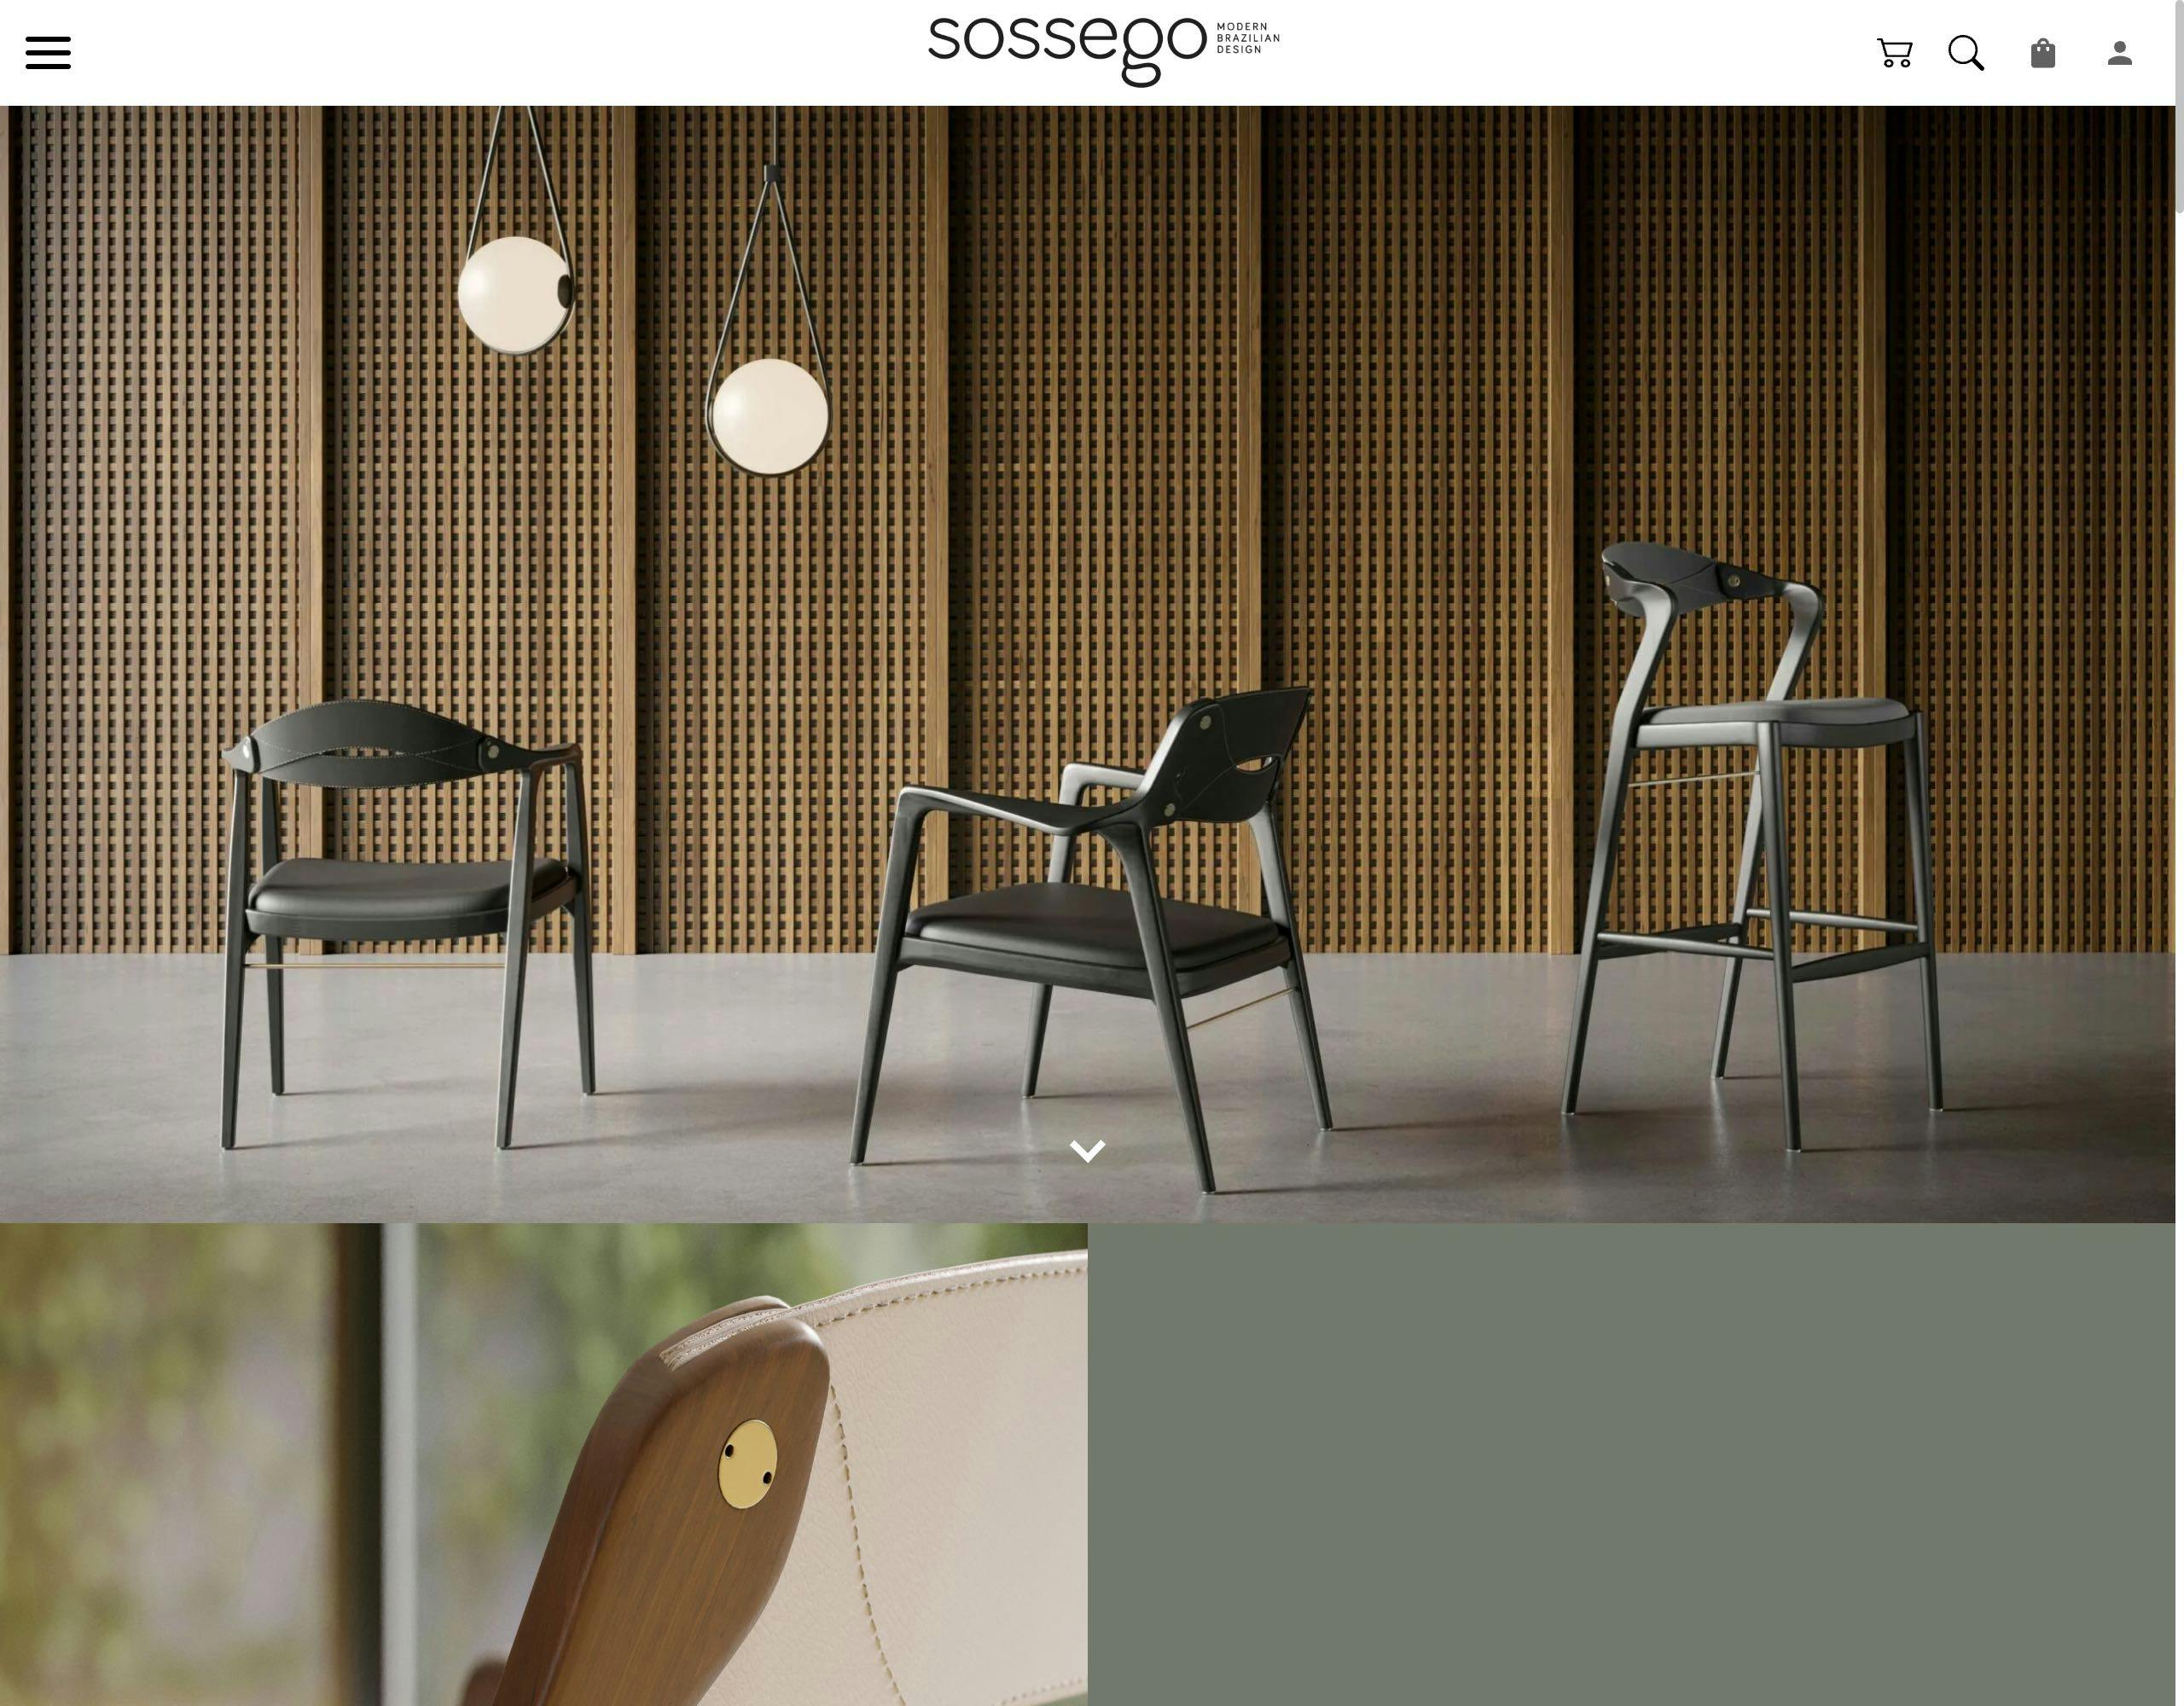 Sossego website